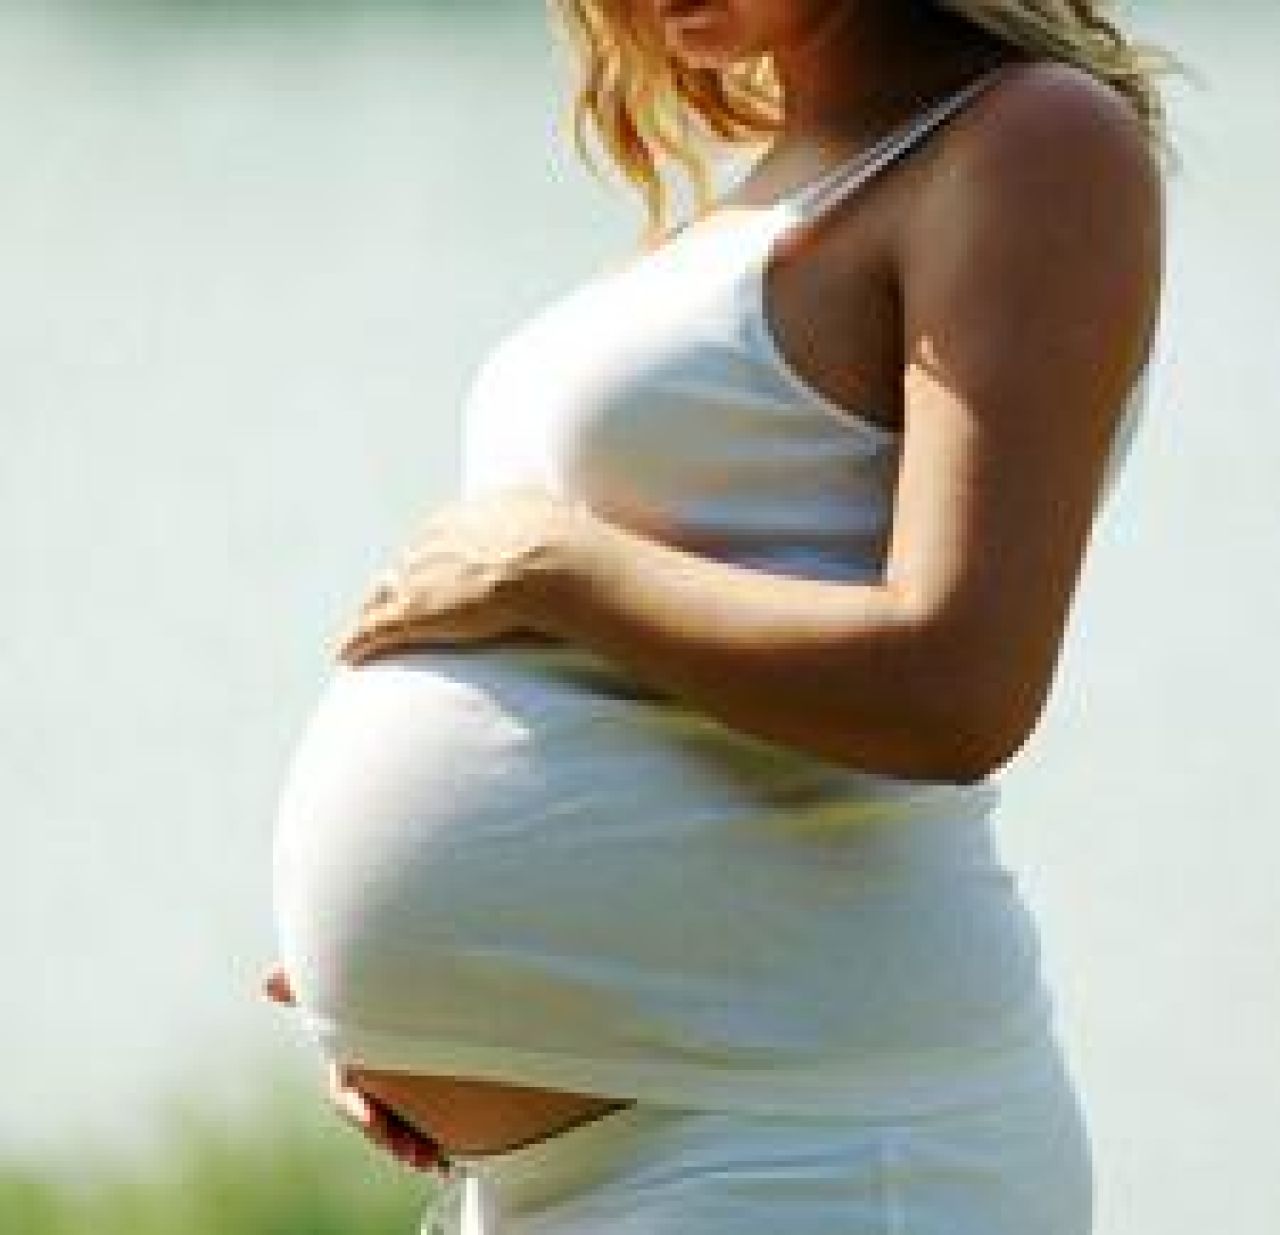 Nieinwazyjne badania prenatalne - bezpieczne dla matki i dziecka